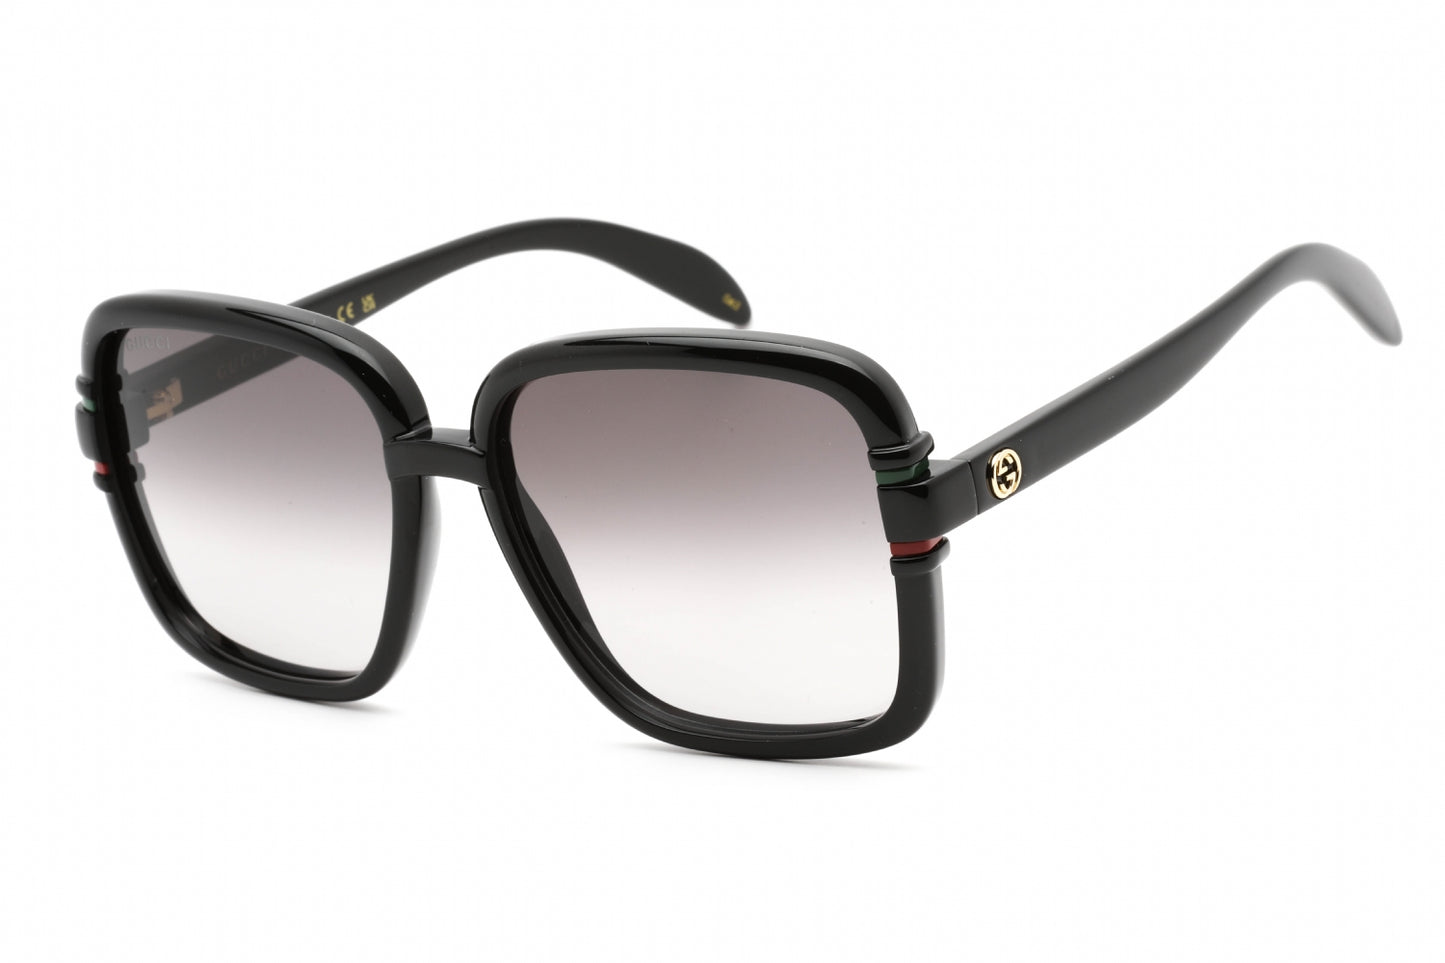 Gucci GG1066S-001 59mm New Sunglasses